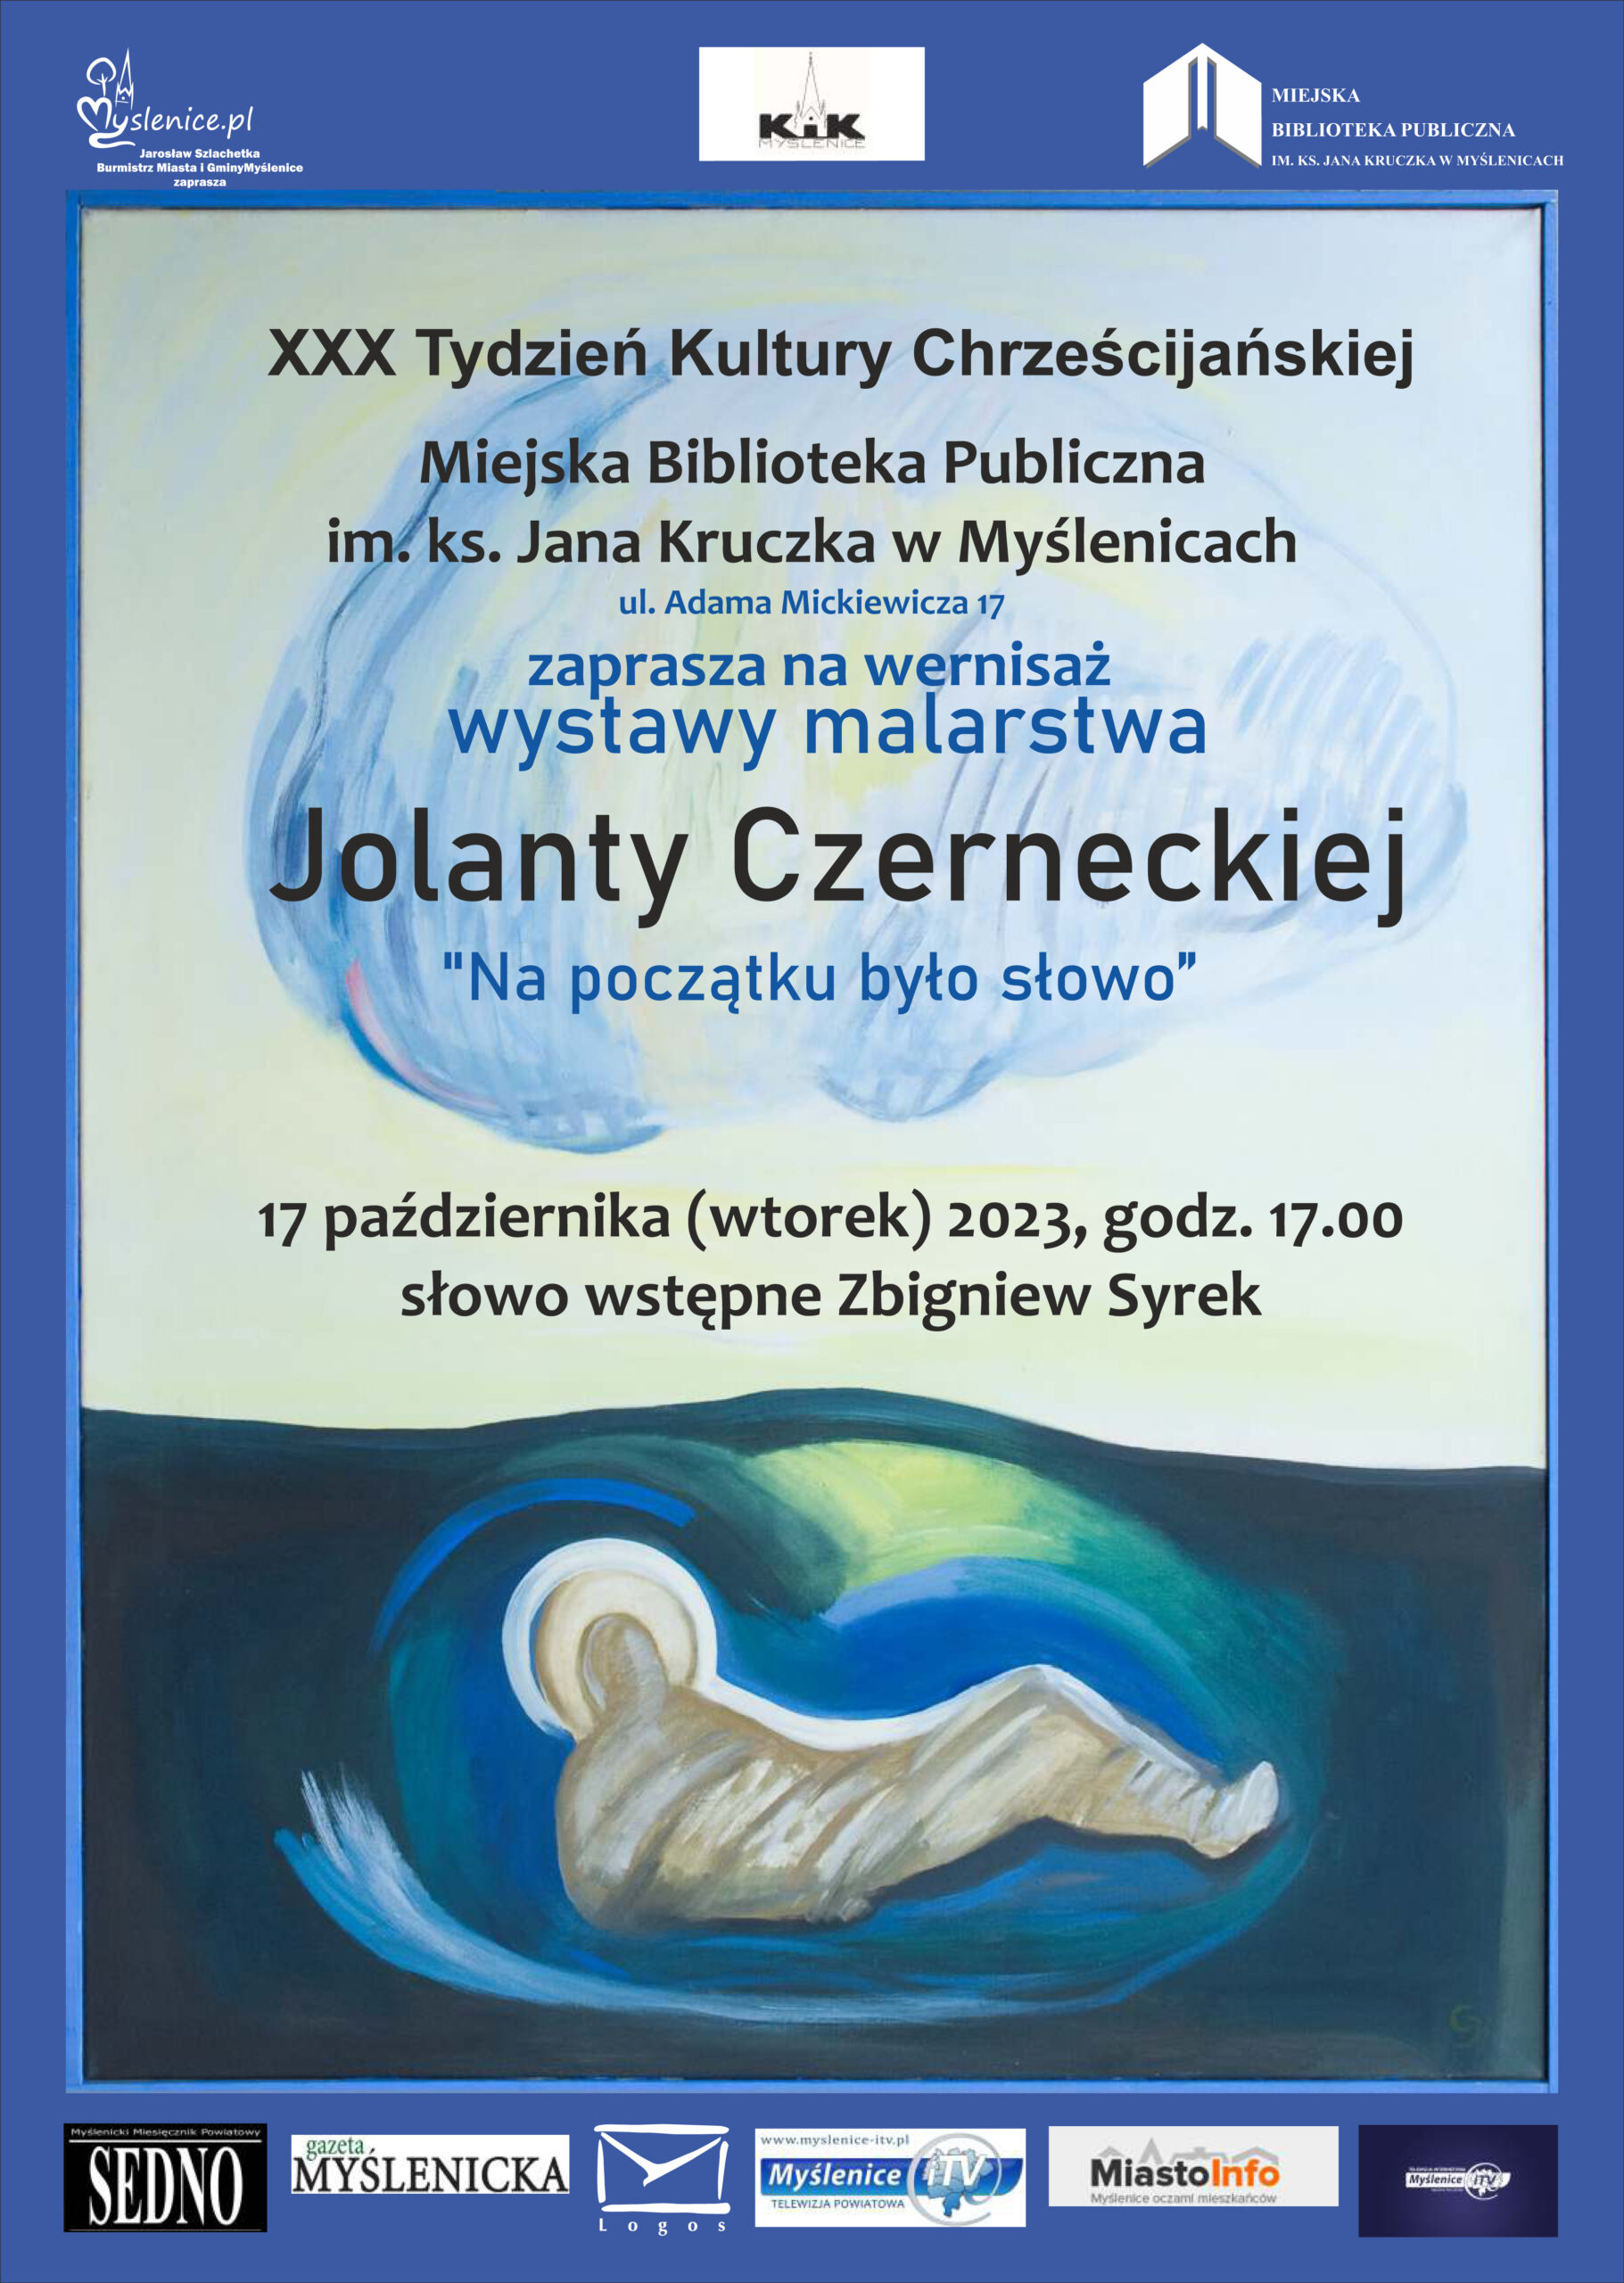 Wernisaż wystawy malarstwa Jolanty Czerneckiej